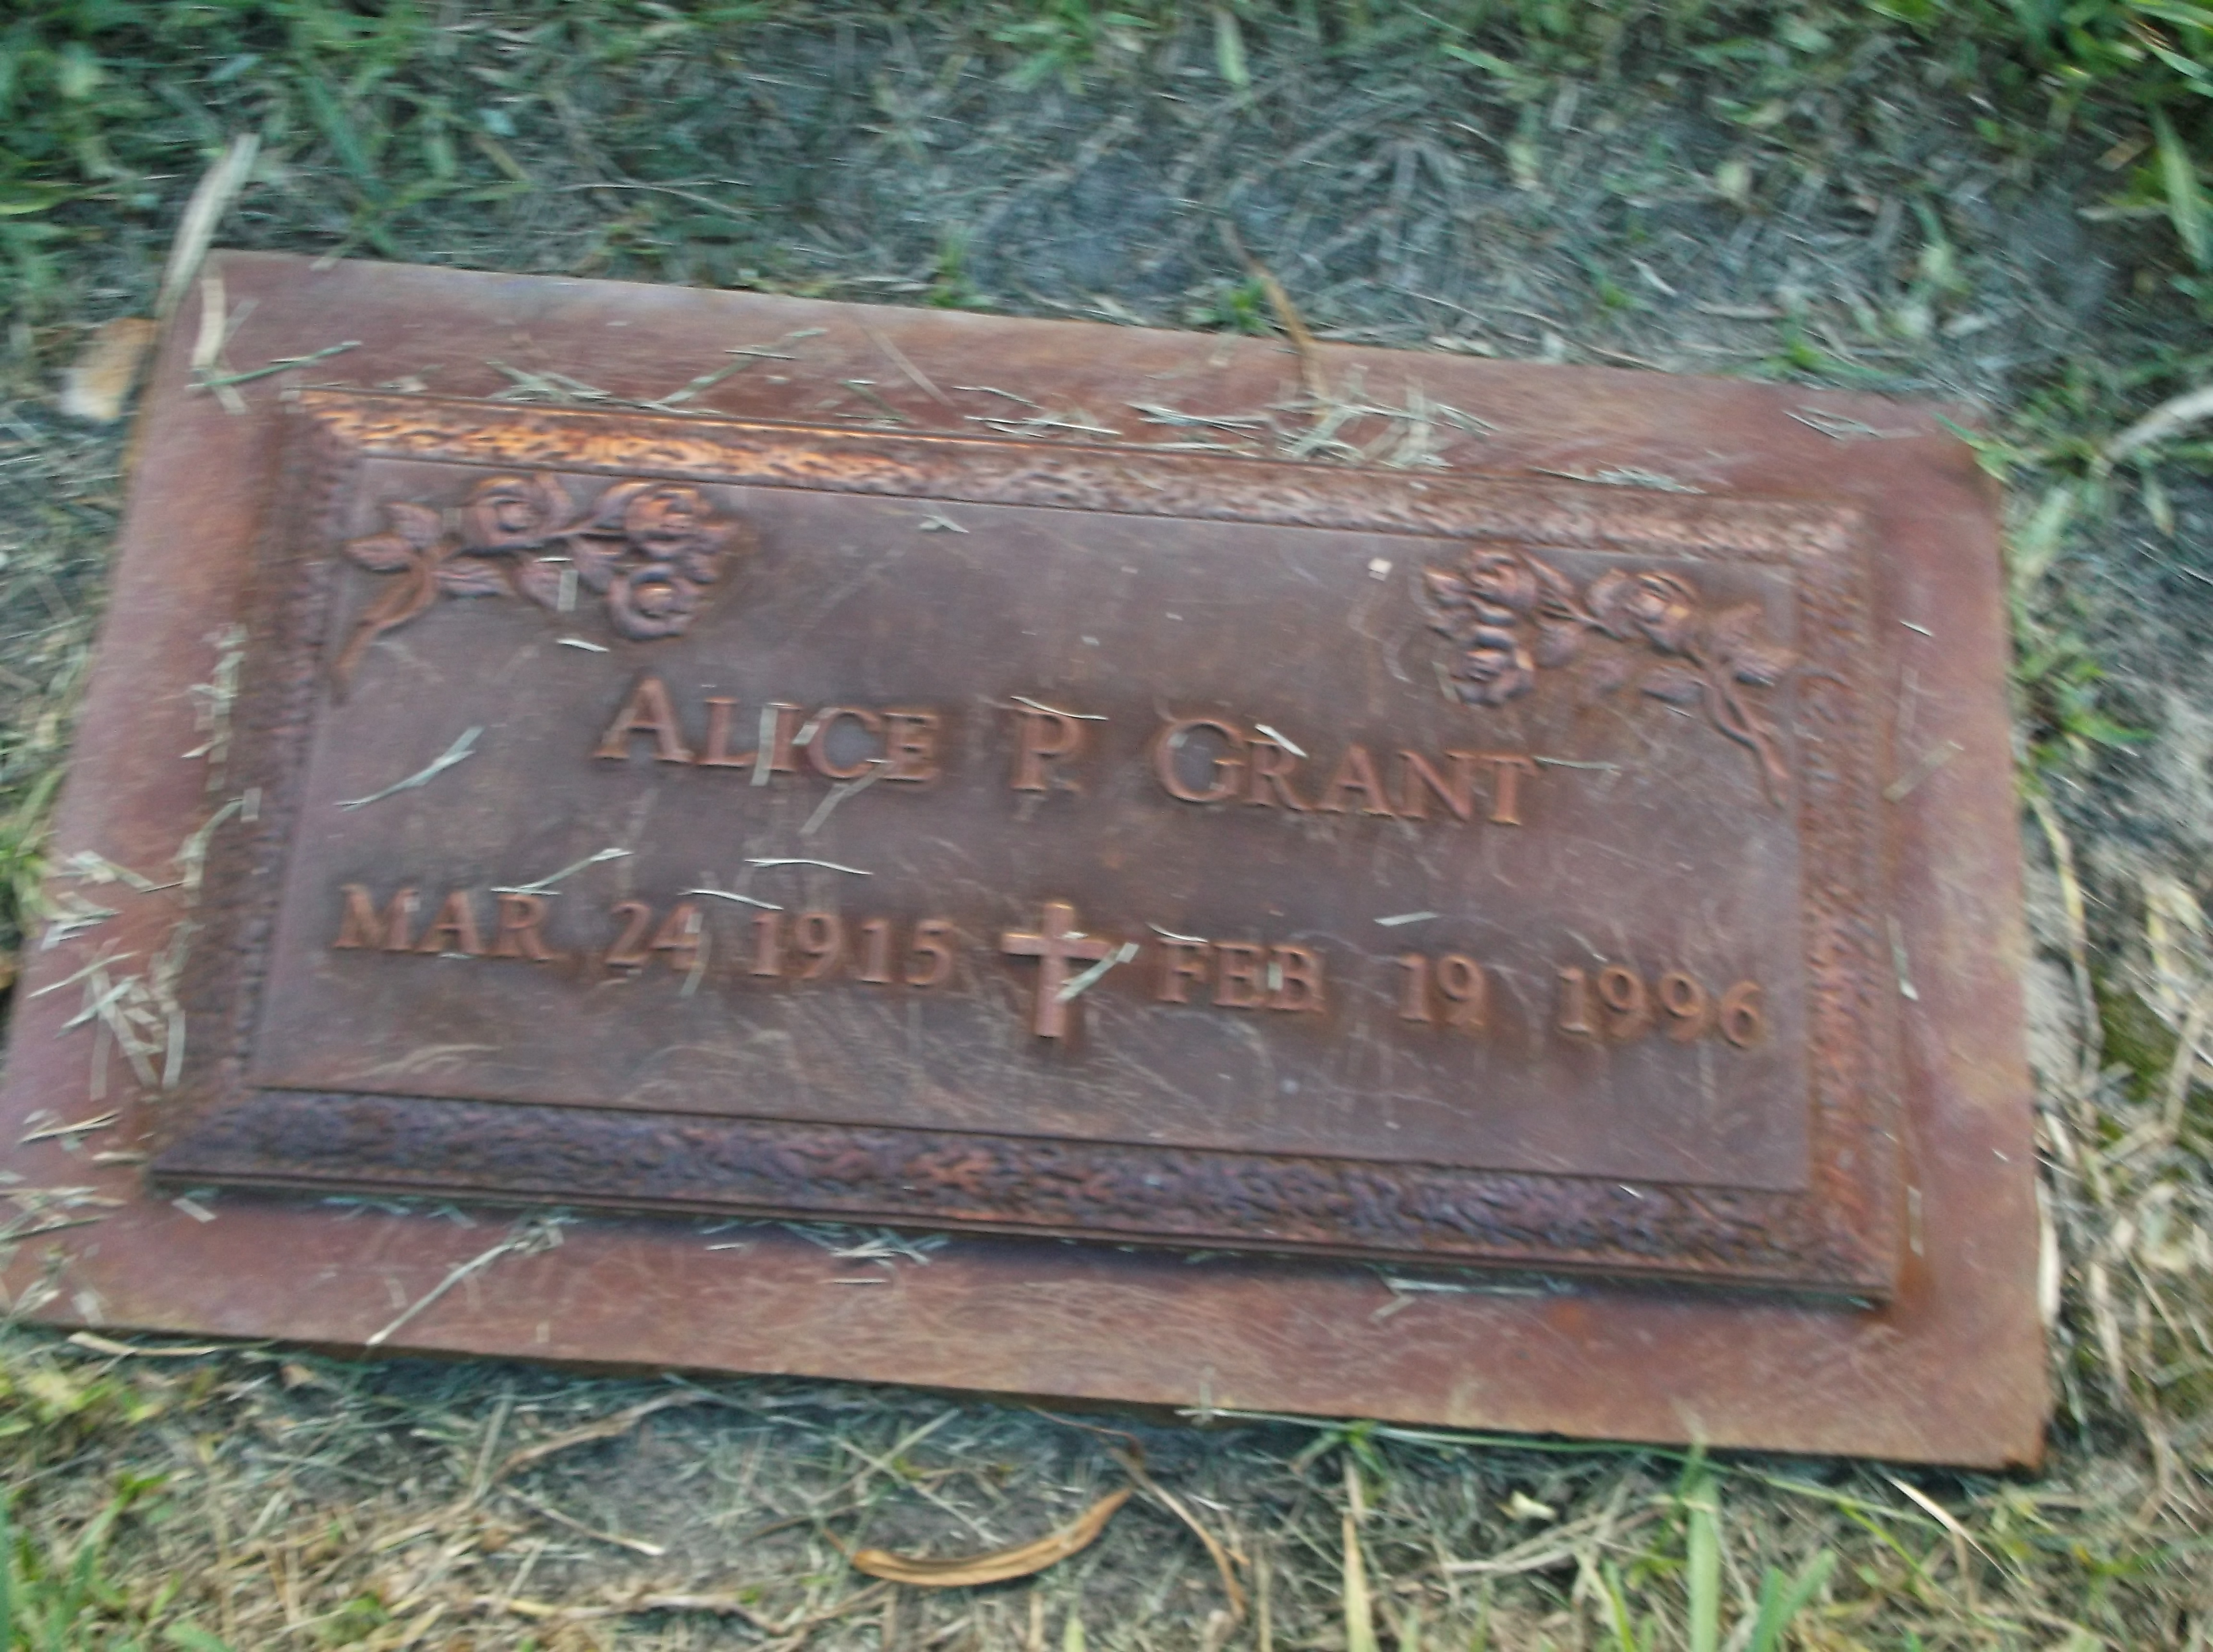 Alice P Grant